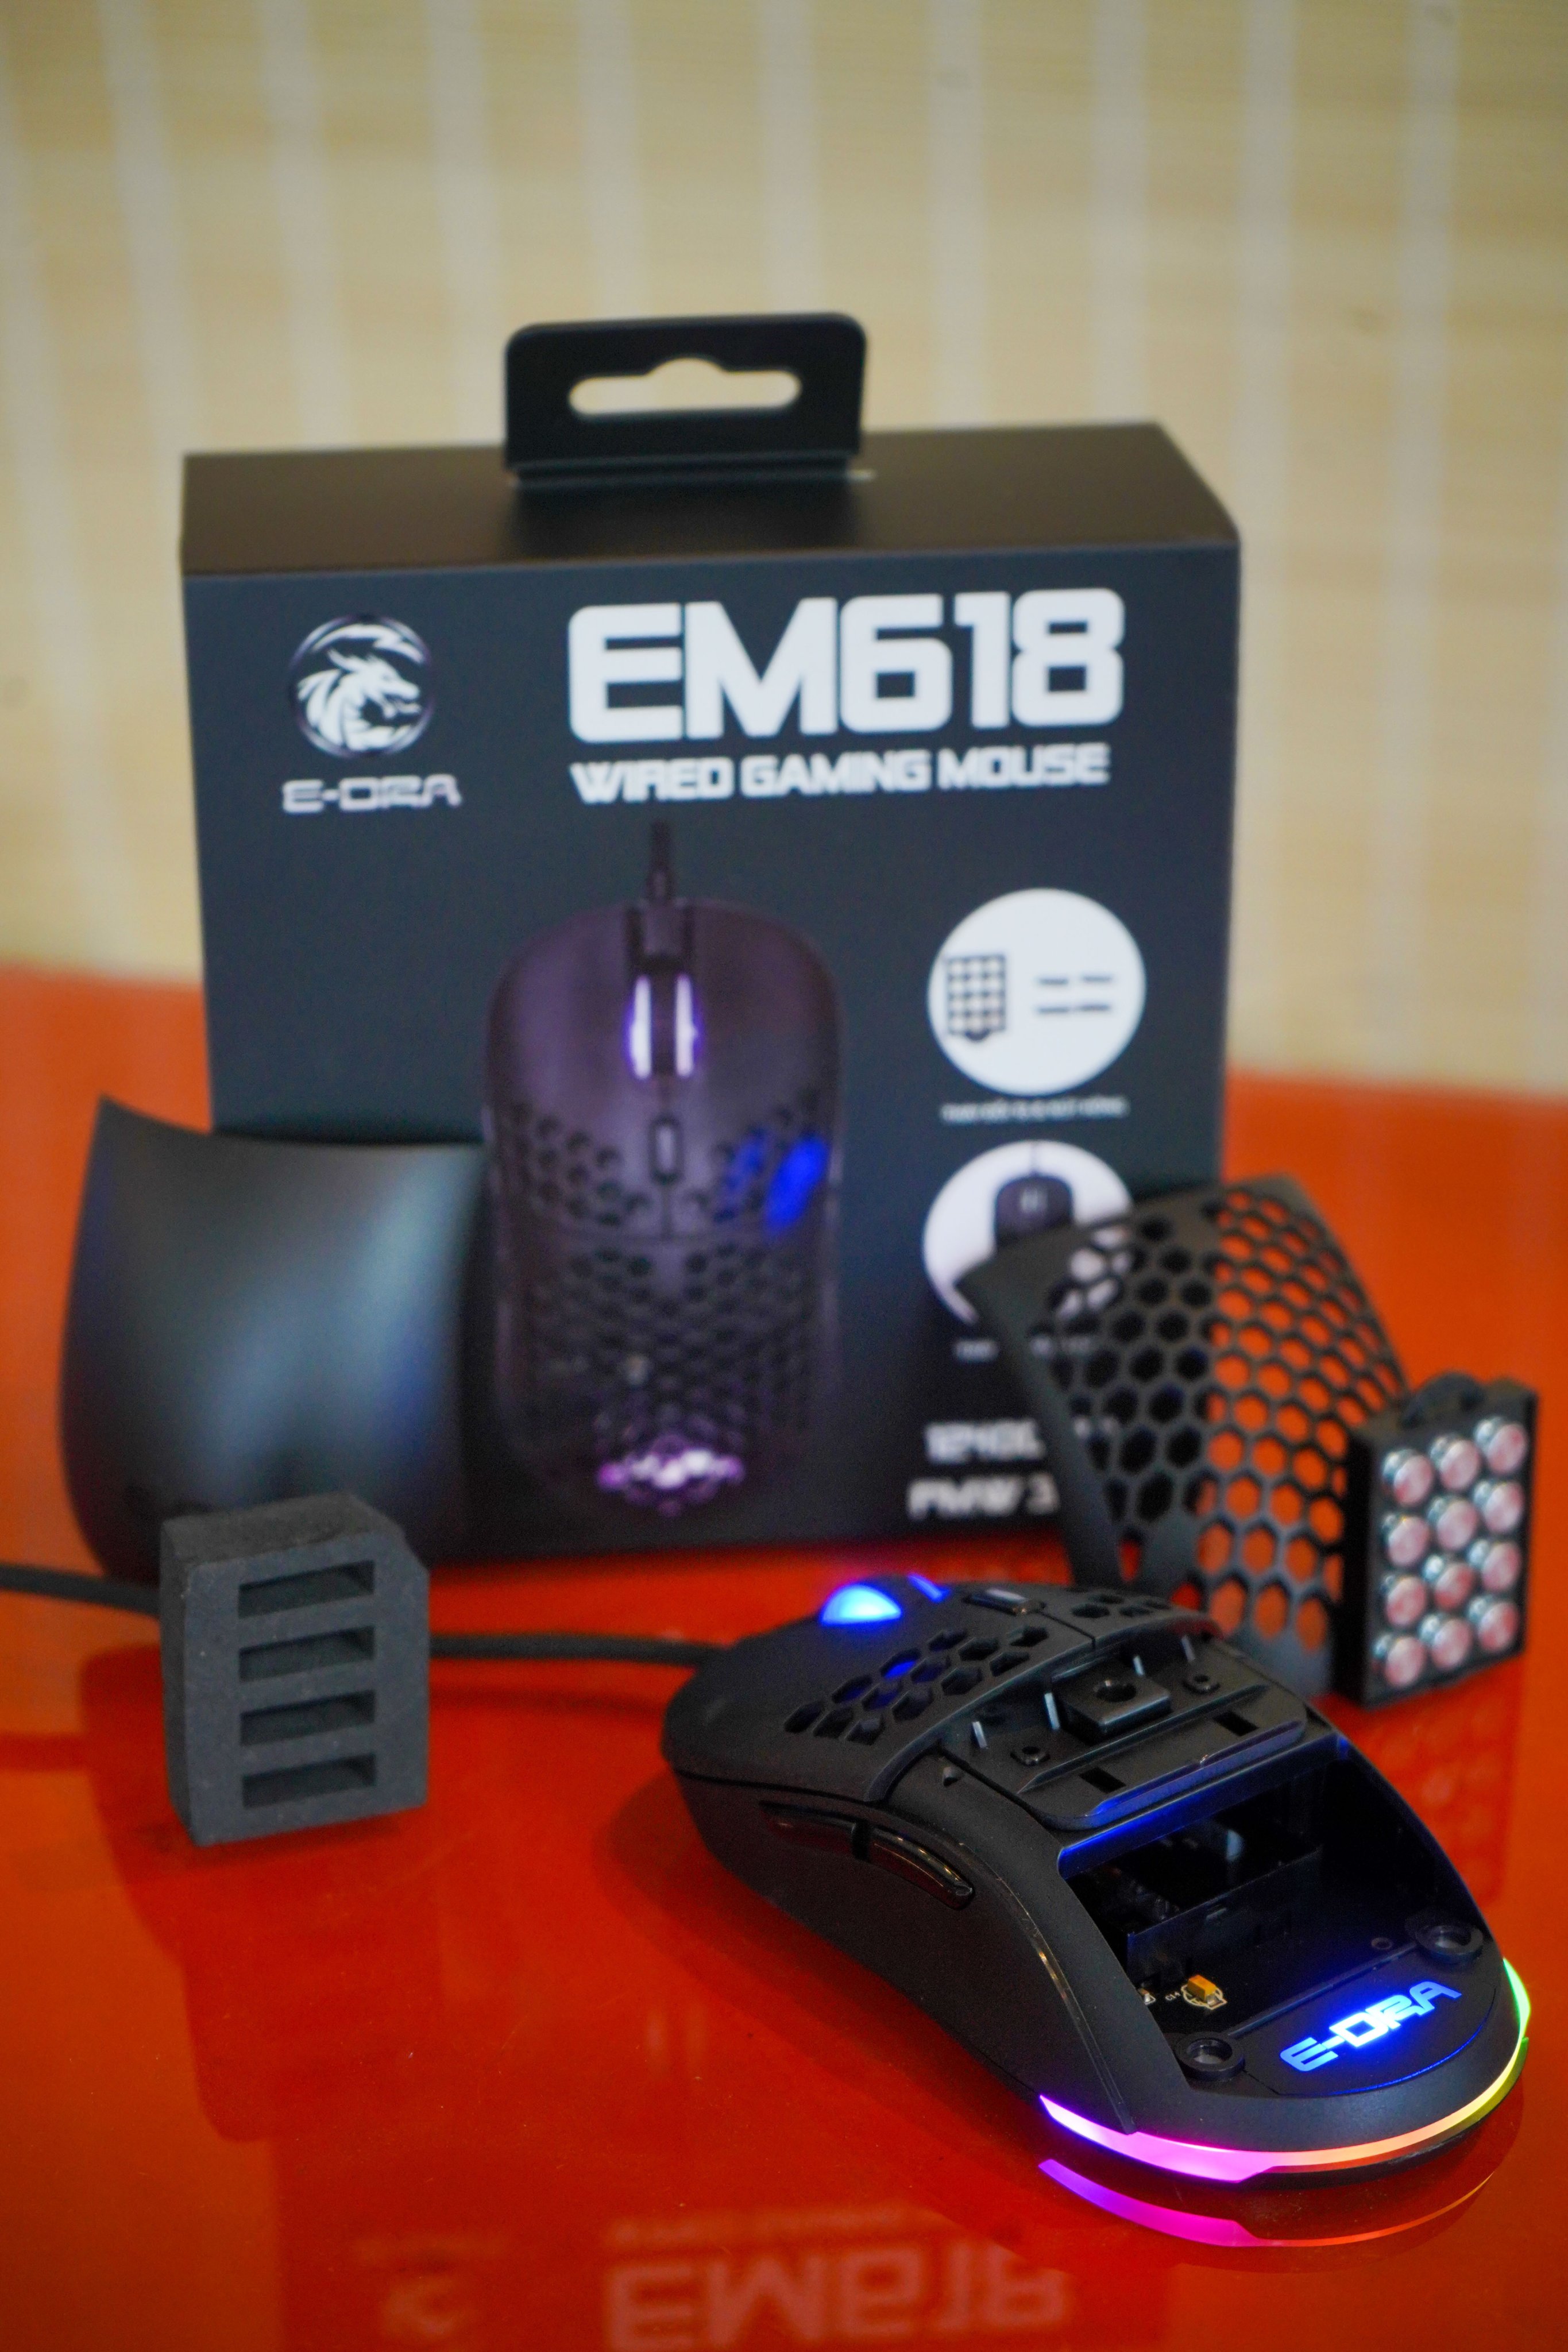 Đánh giá EM618, chuột gaming thế hệ mới “siêu linh hoạt” nhà E-Dra